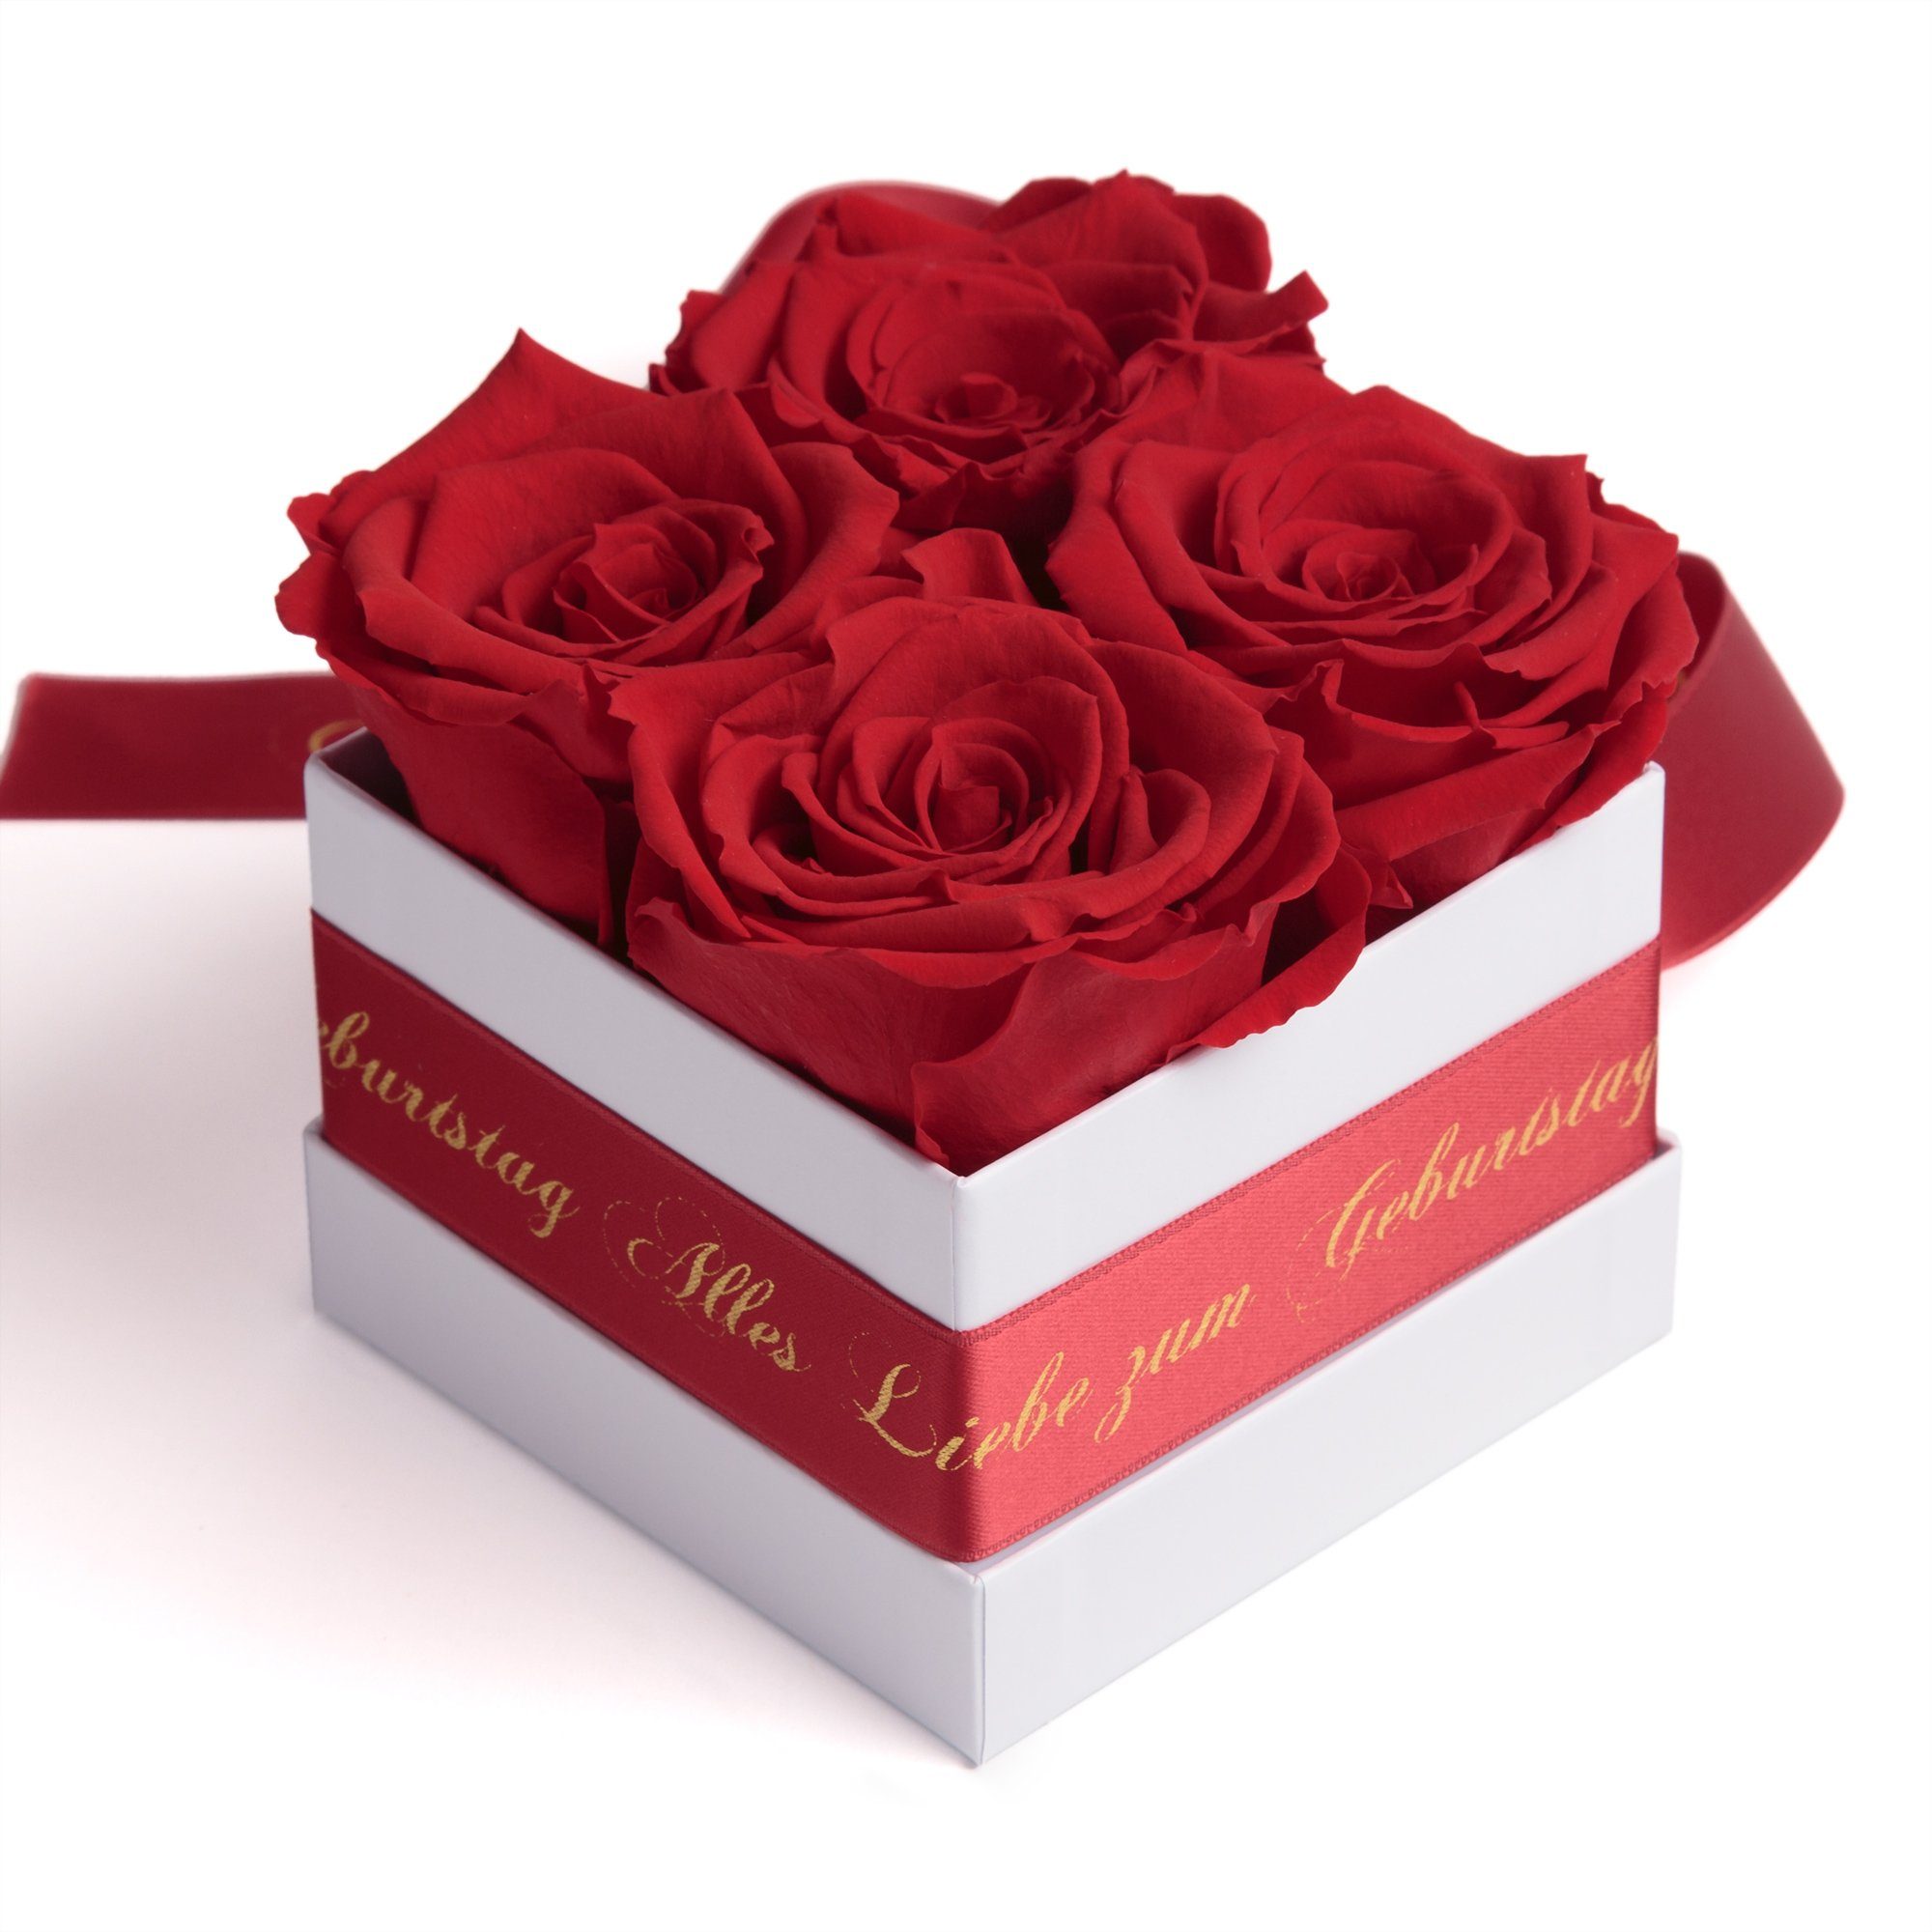 ROSEMARIE SCHULZ Heidelberg Geburtstag bis haltbar Blumen Infinity Dekoobjekt Echte Rose zum zu rot Alles 3 Geschenk, Jahre Rosenbox Liebe